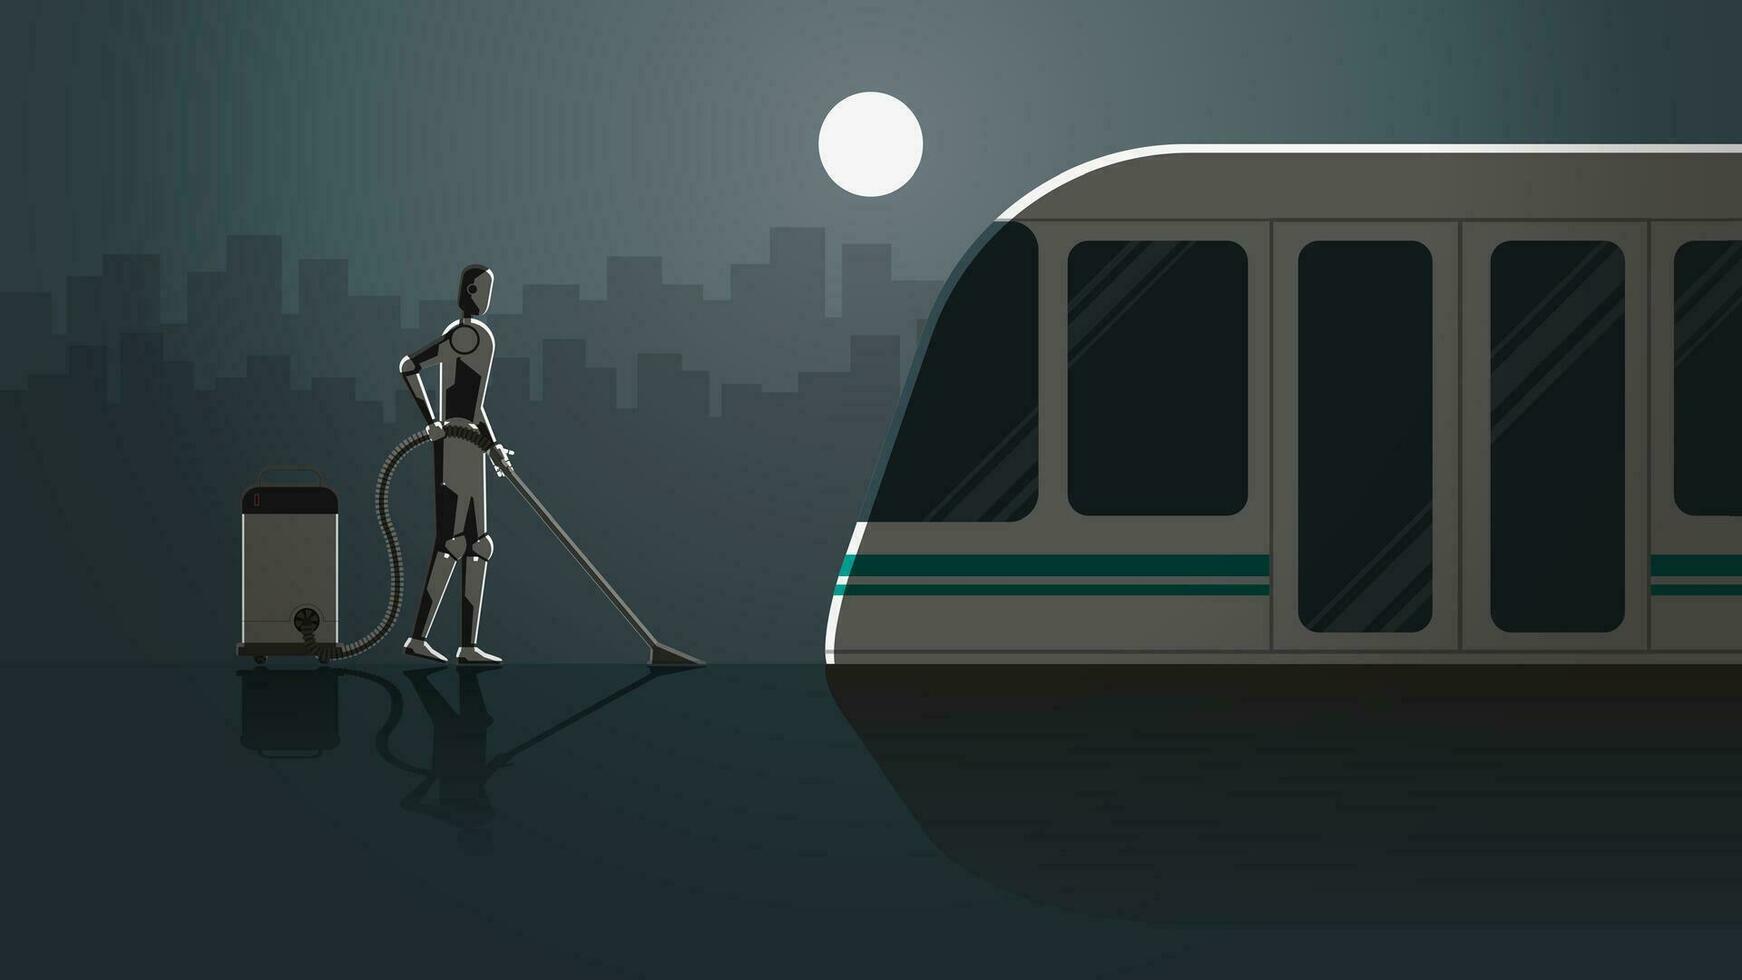 robot arbete i tåg station plattform för 24 timmar i de mörk och full månsken utan människor. vektor